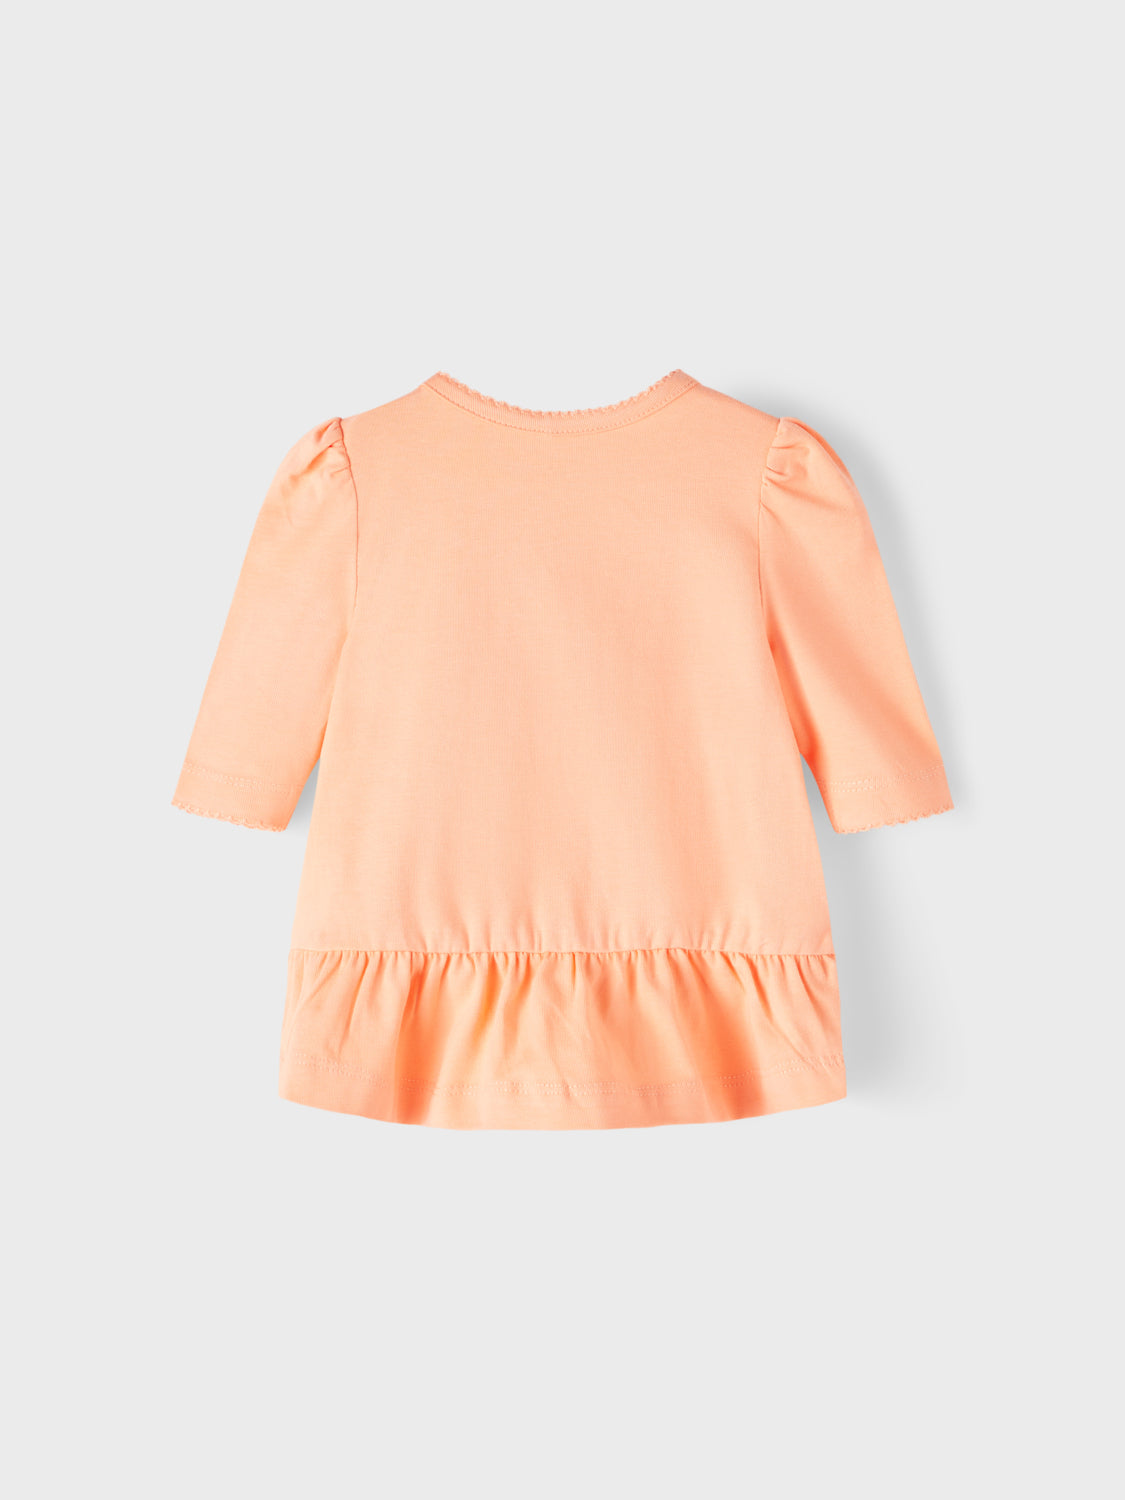 NBFFONIA T-Shirts & Tops - Peach Nectar